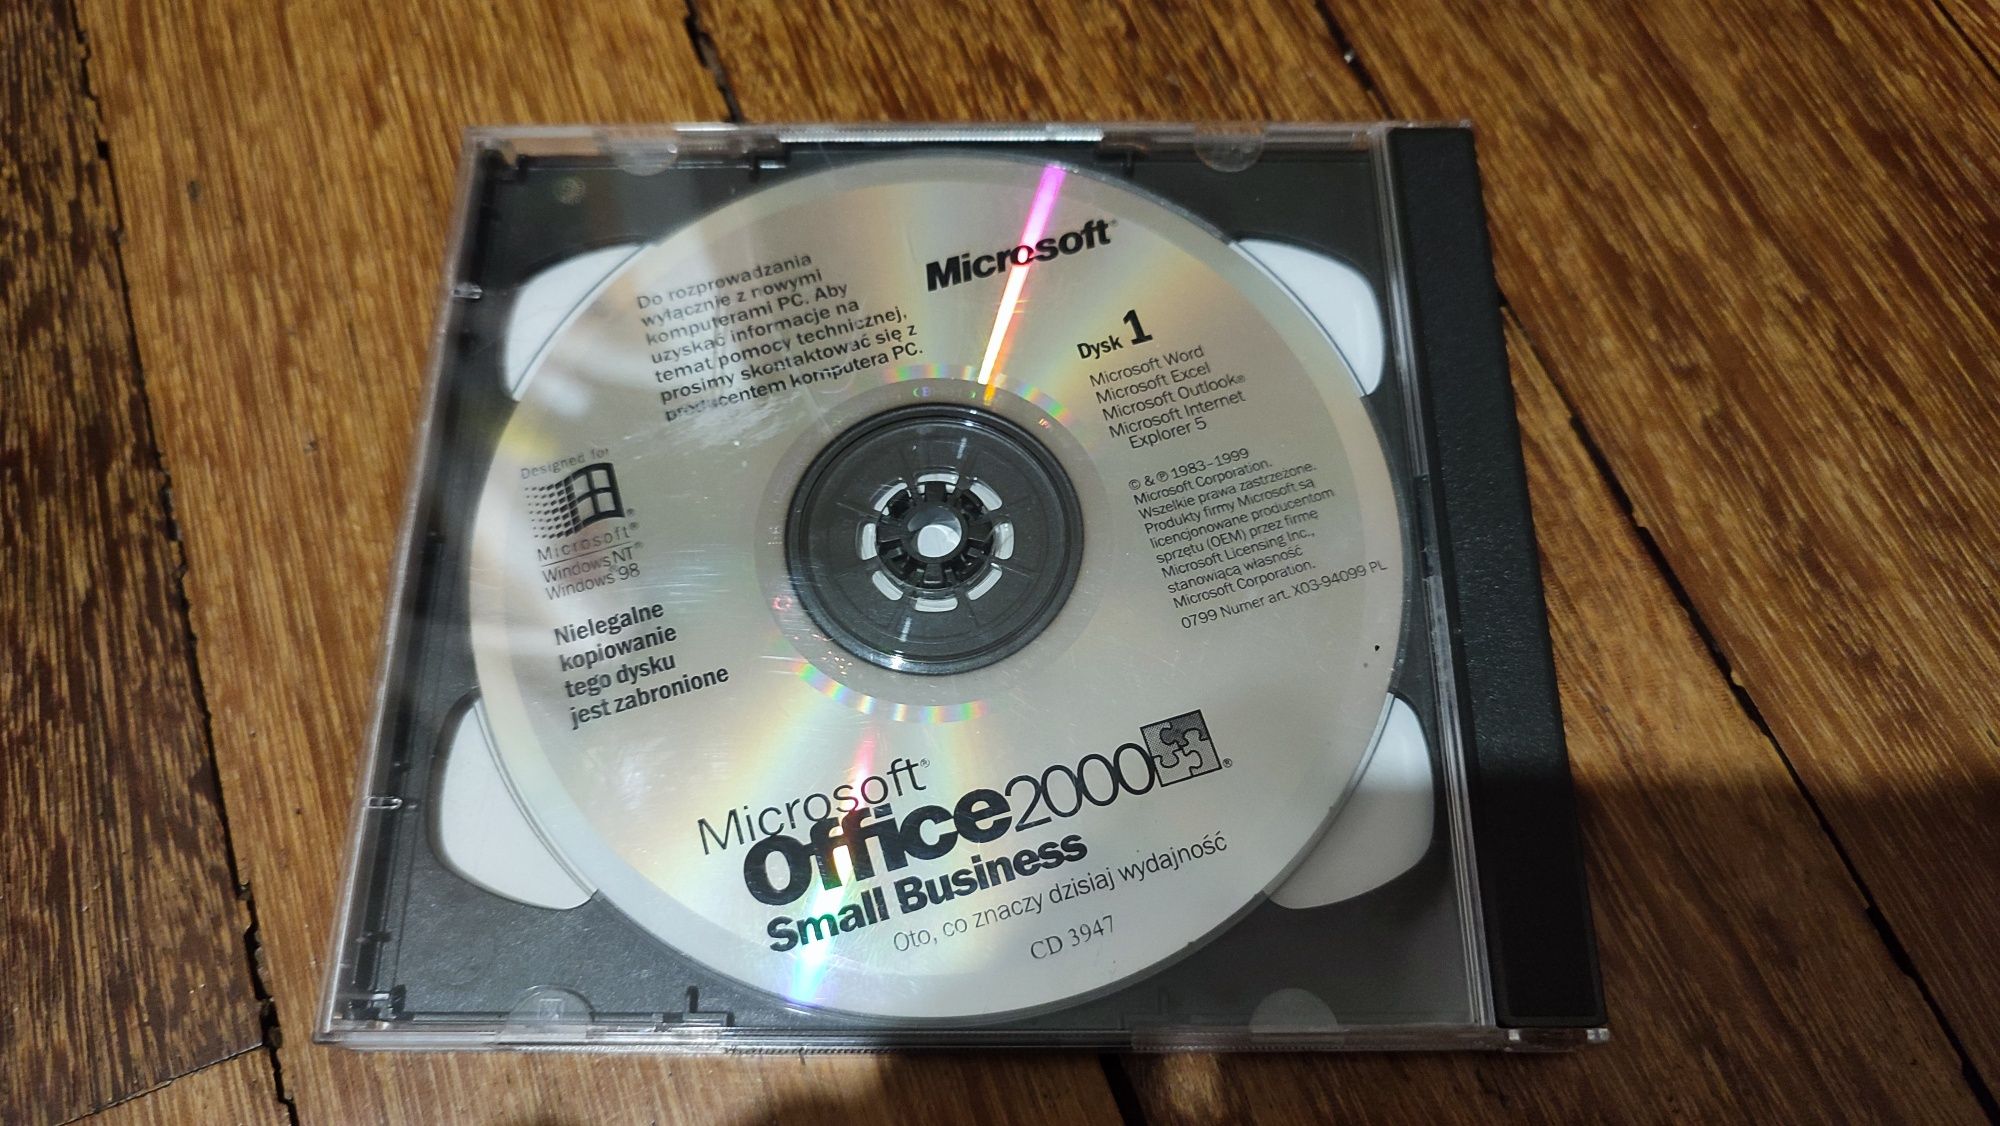 Microsoft Office 2000 Small Business płyty instalacyjne